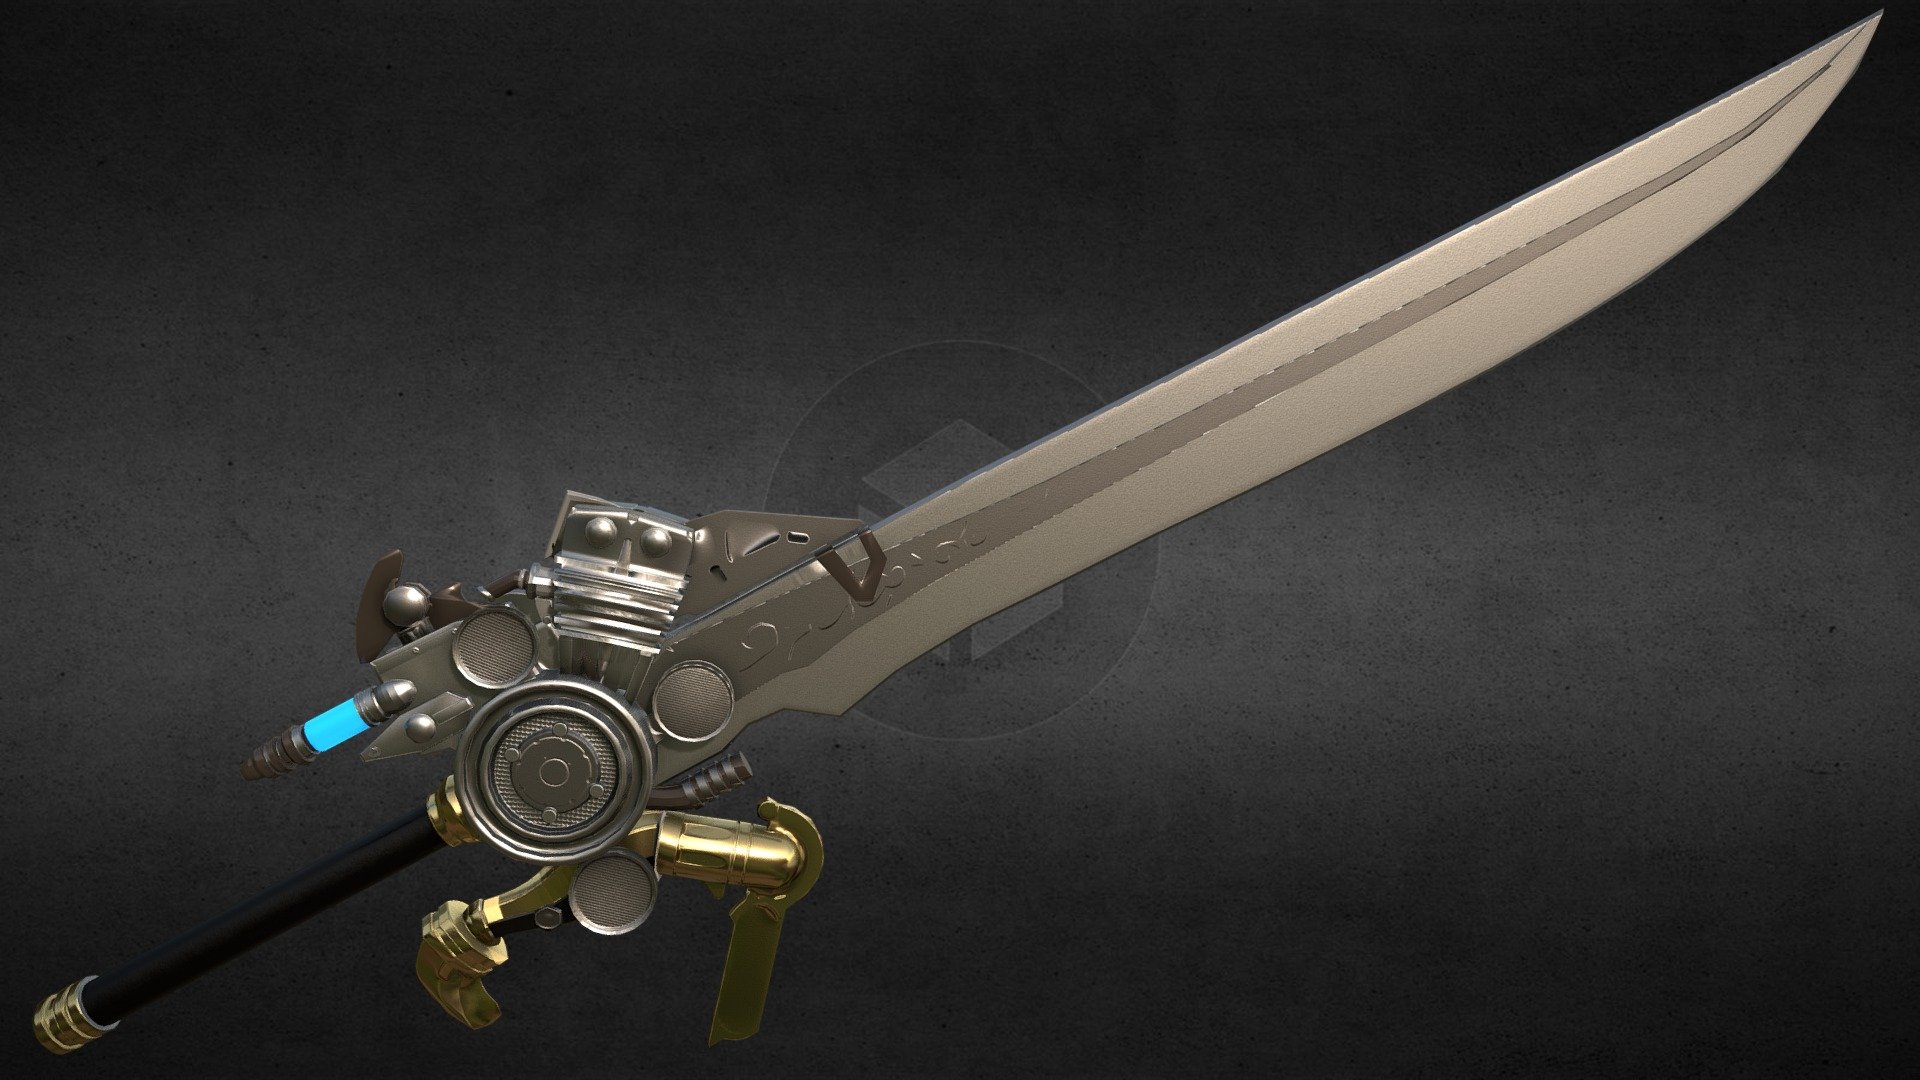 Noctis Engine Sword